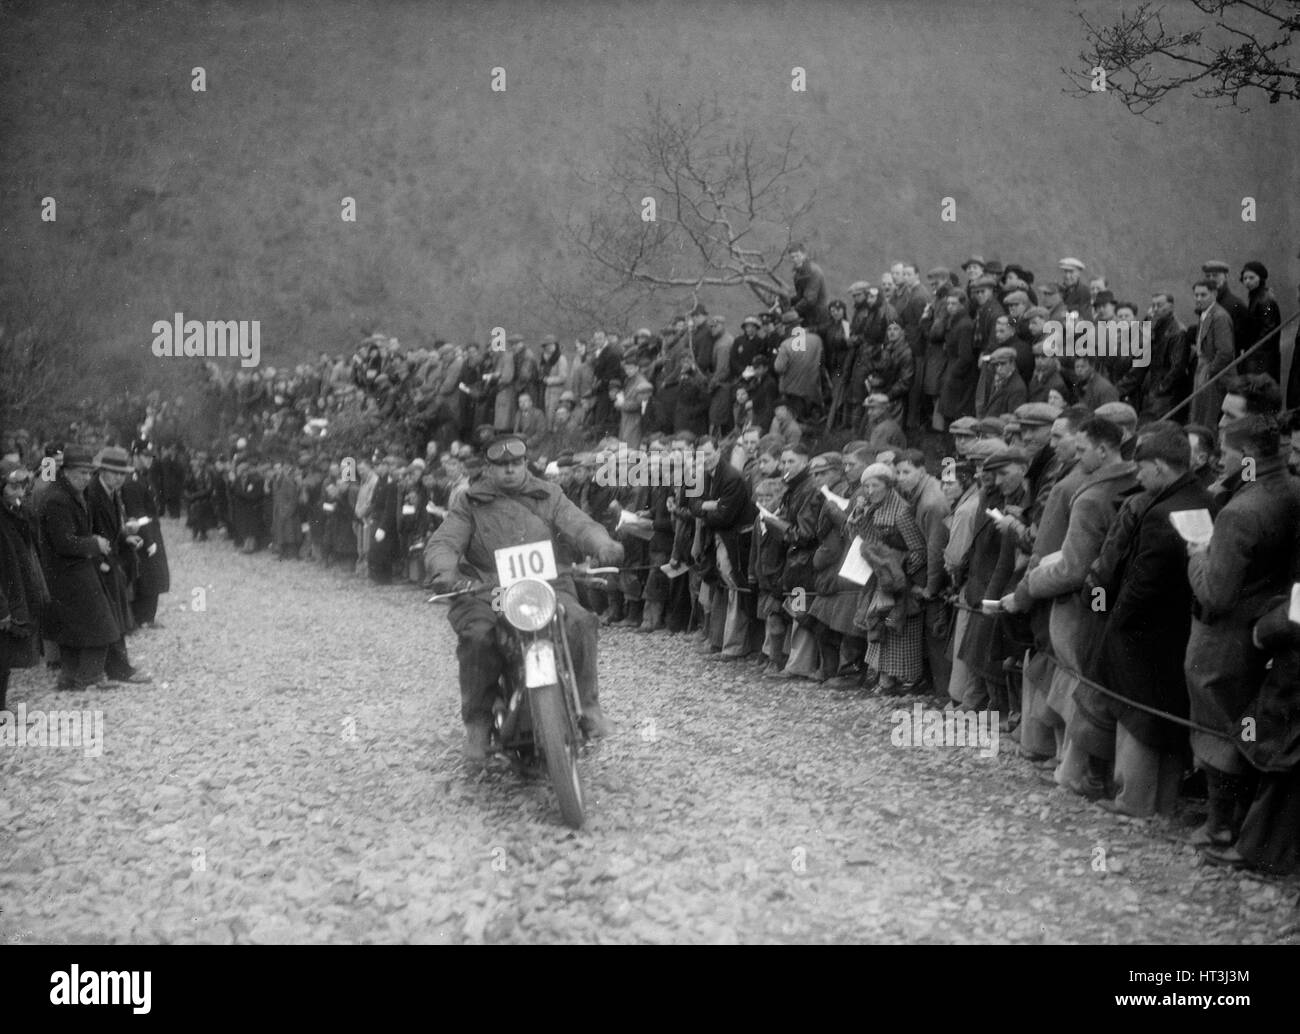 347 ccm AJS J Hey konkurrieren in der MCC Lands End Trial, Bettler Roost, Devon, 1936. Künstler: Bill Brunell. Stockfoto